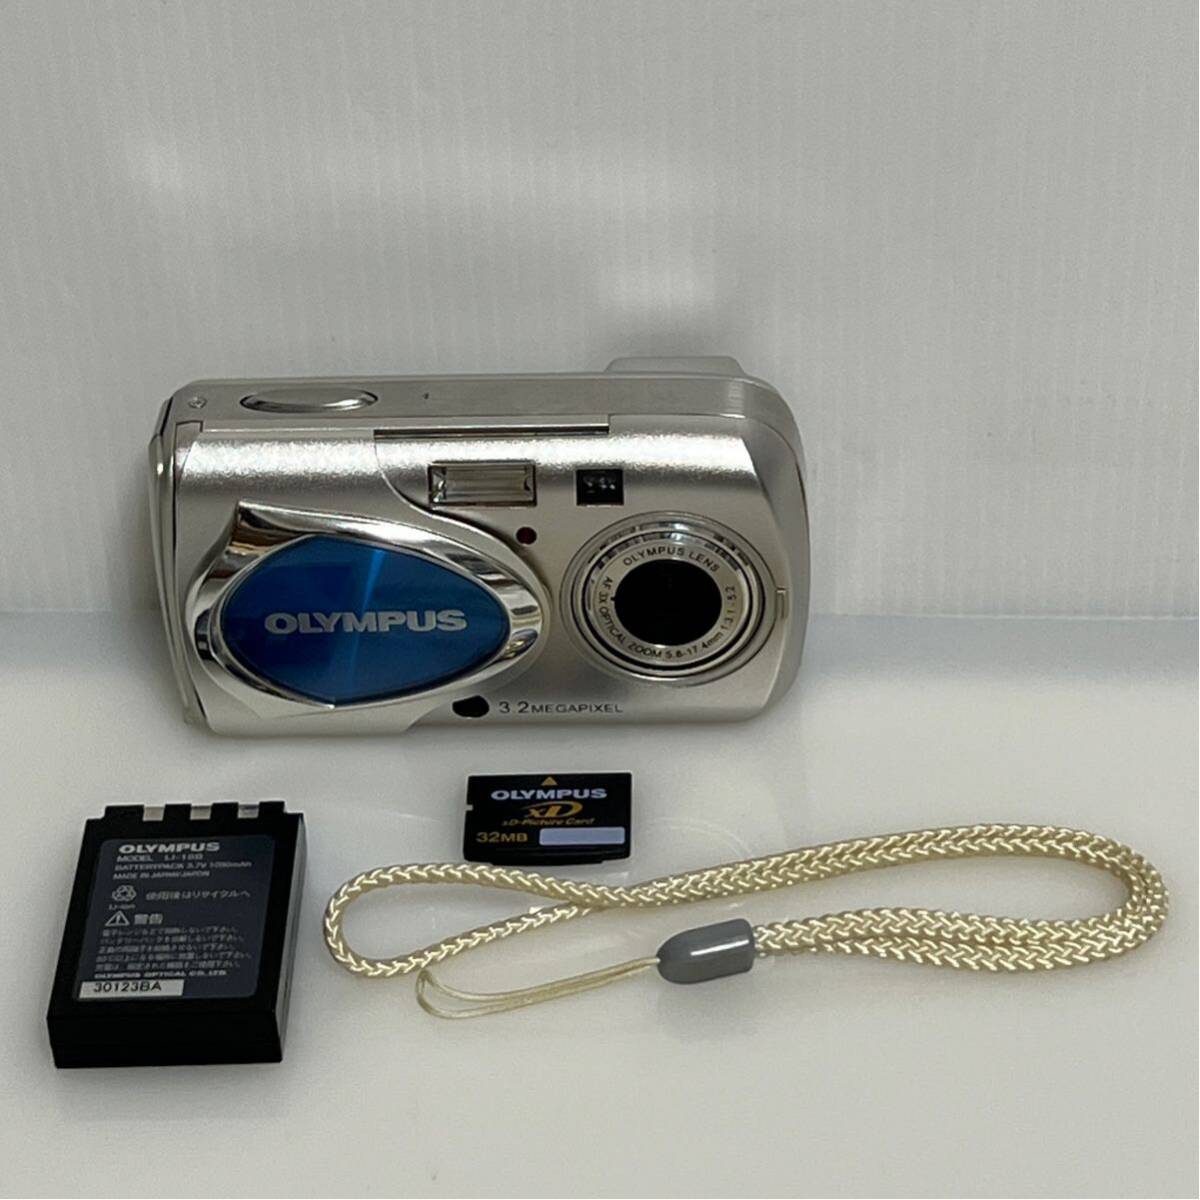 OLYMPUS компактный цифровой фотоаппарат u-10 digital